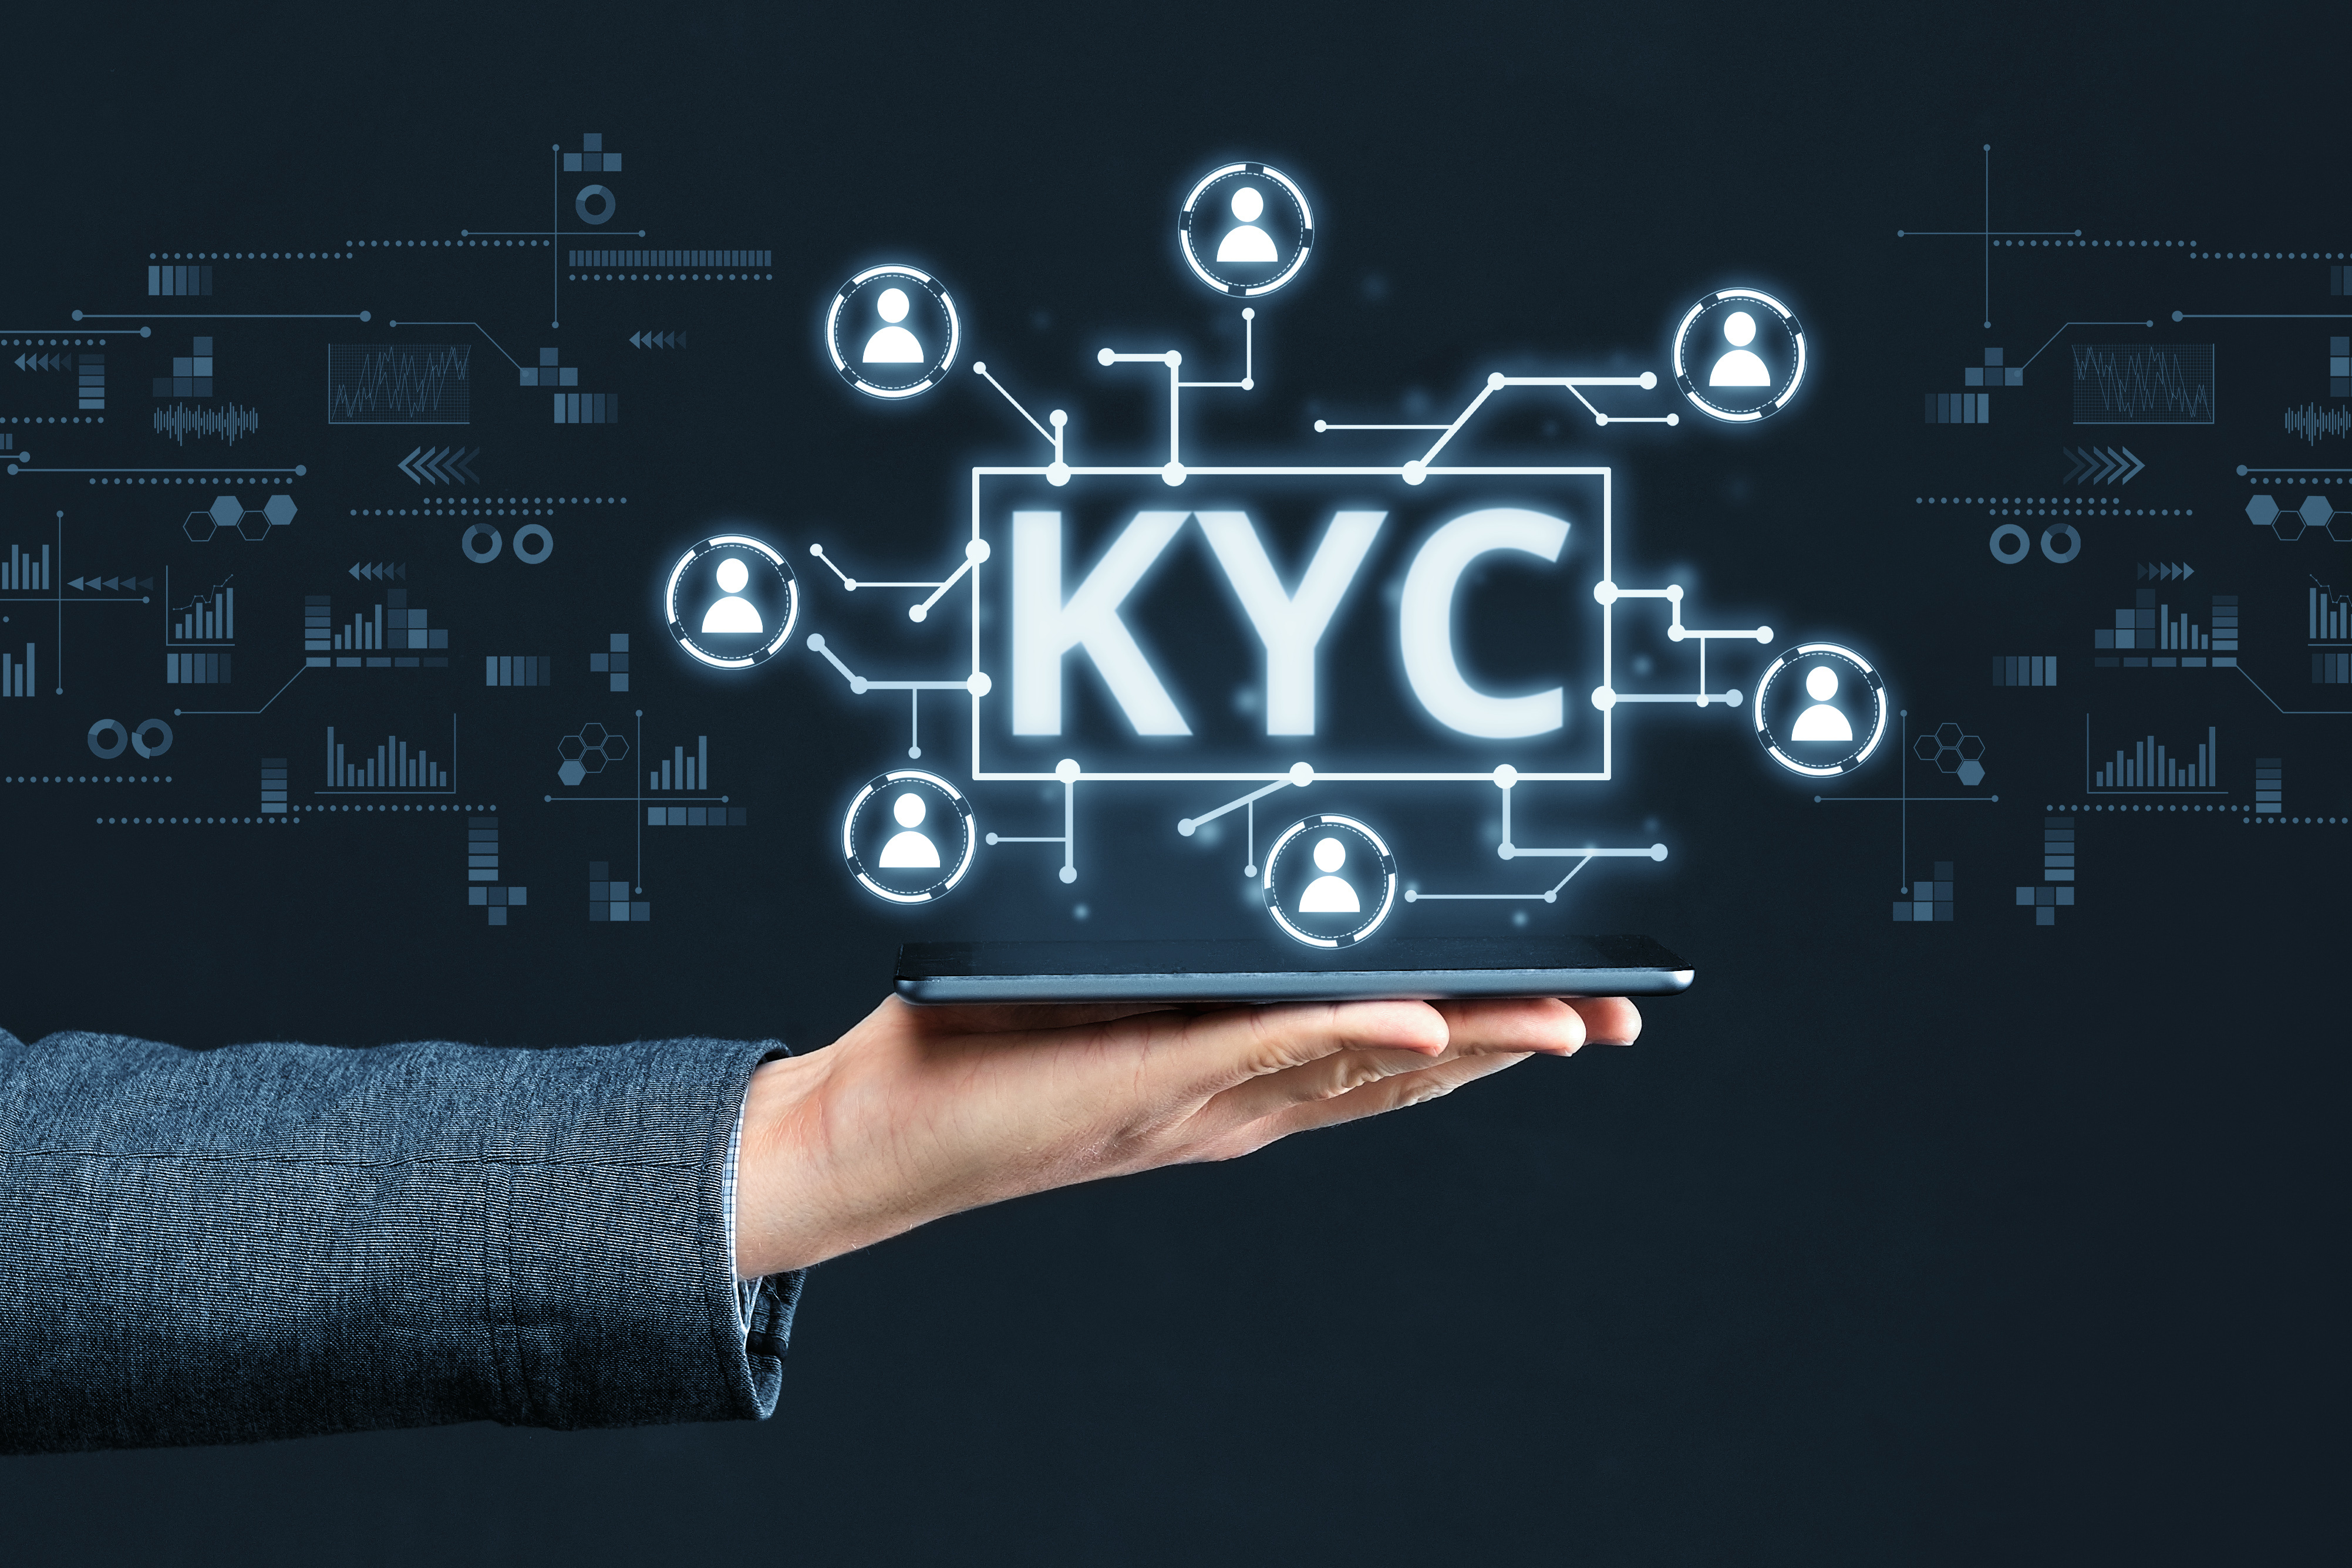 Können KYC und erlaubnisfreies Geld nebeneinander existieren? Nicht laut diesem Krypto-Influencer